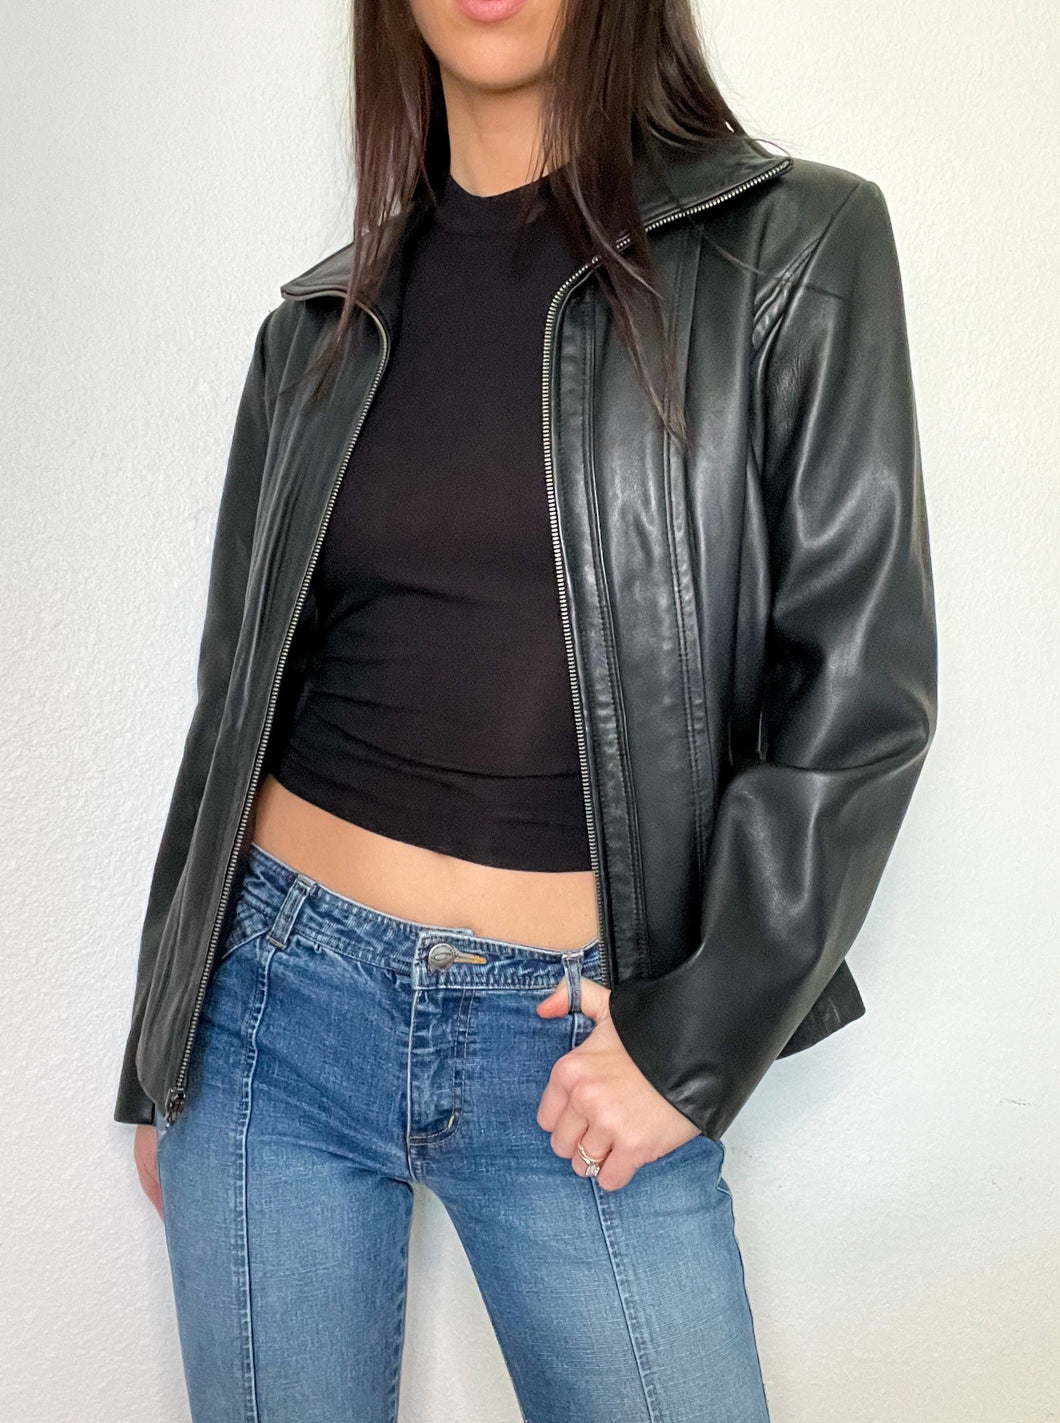 Black Zip Up Y2K Leather Jacket (M)